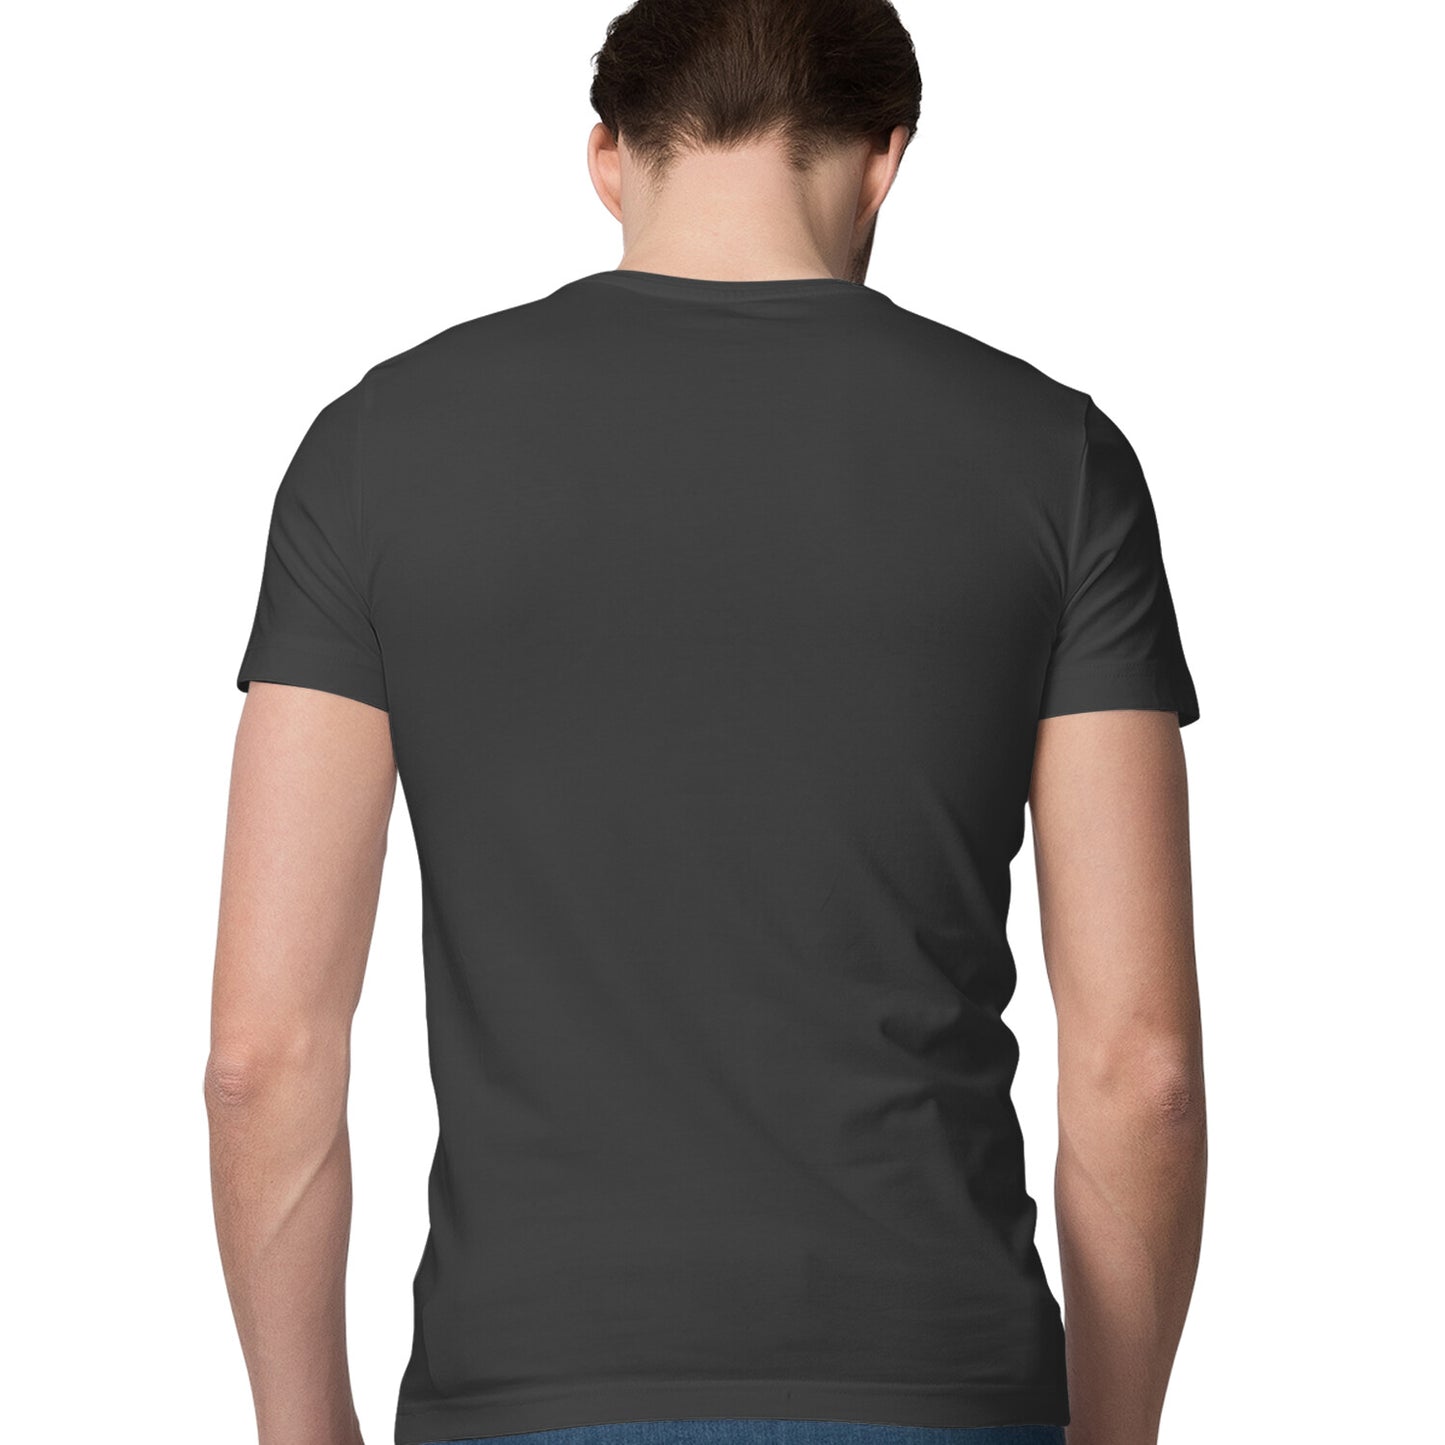 Full of Rock - Sleek Design T-shirt - Men